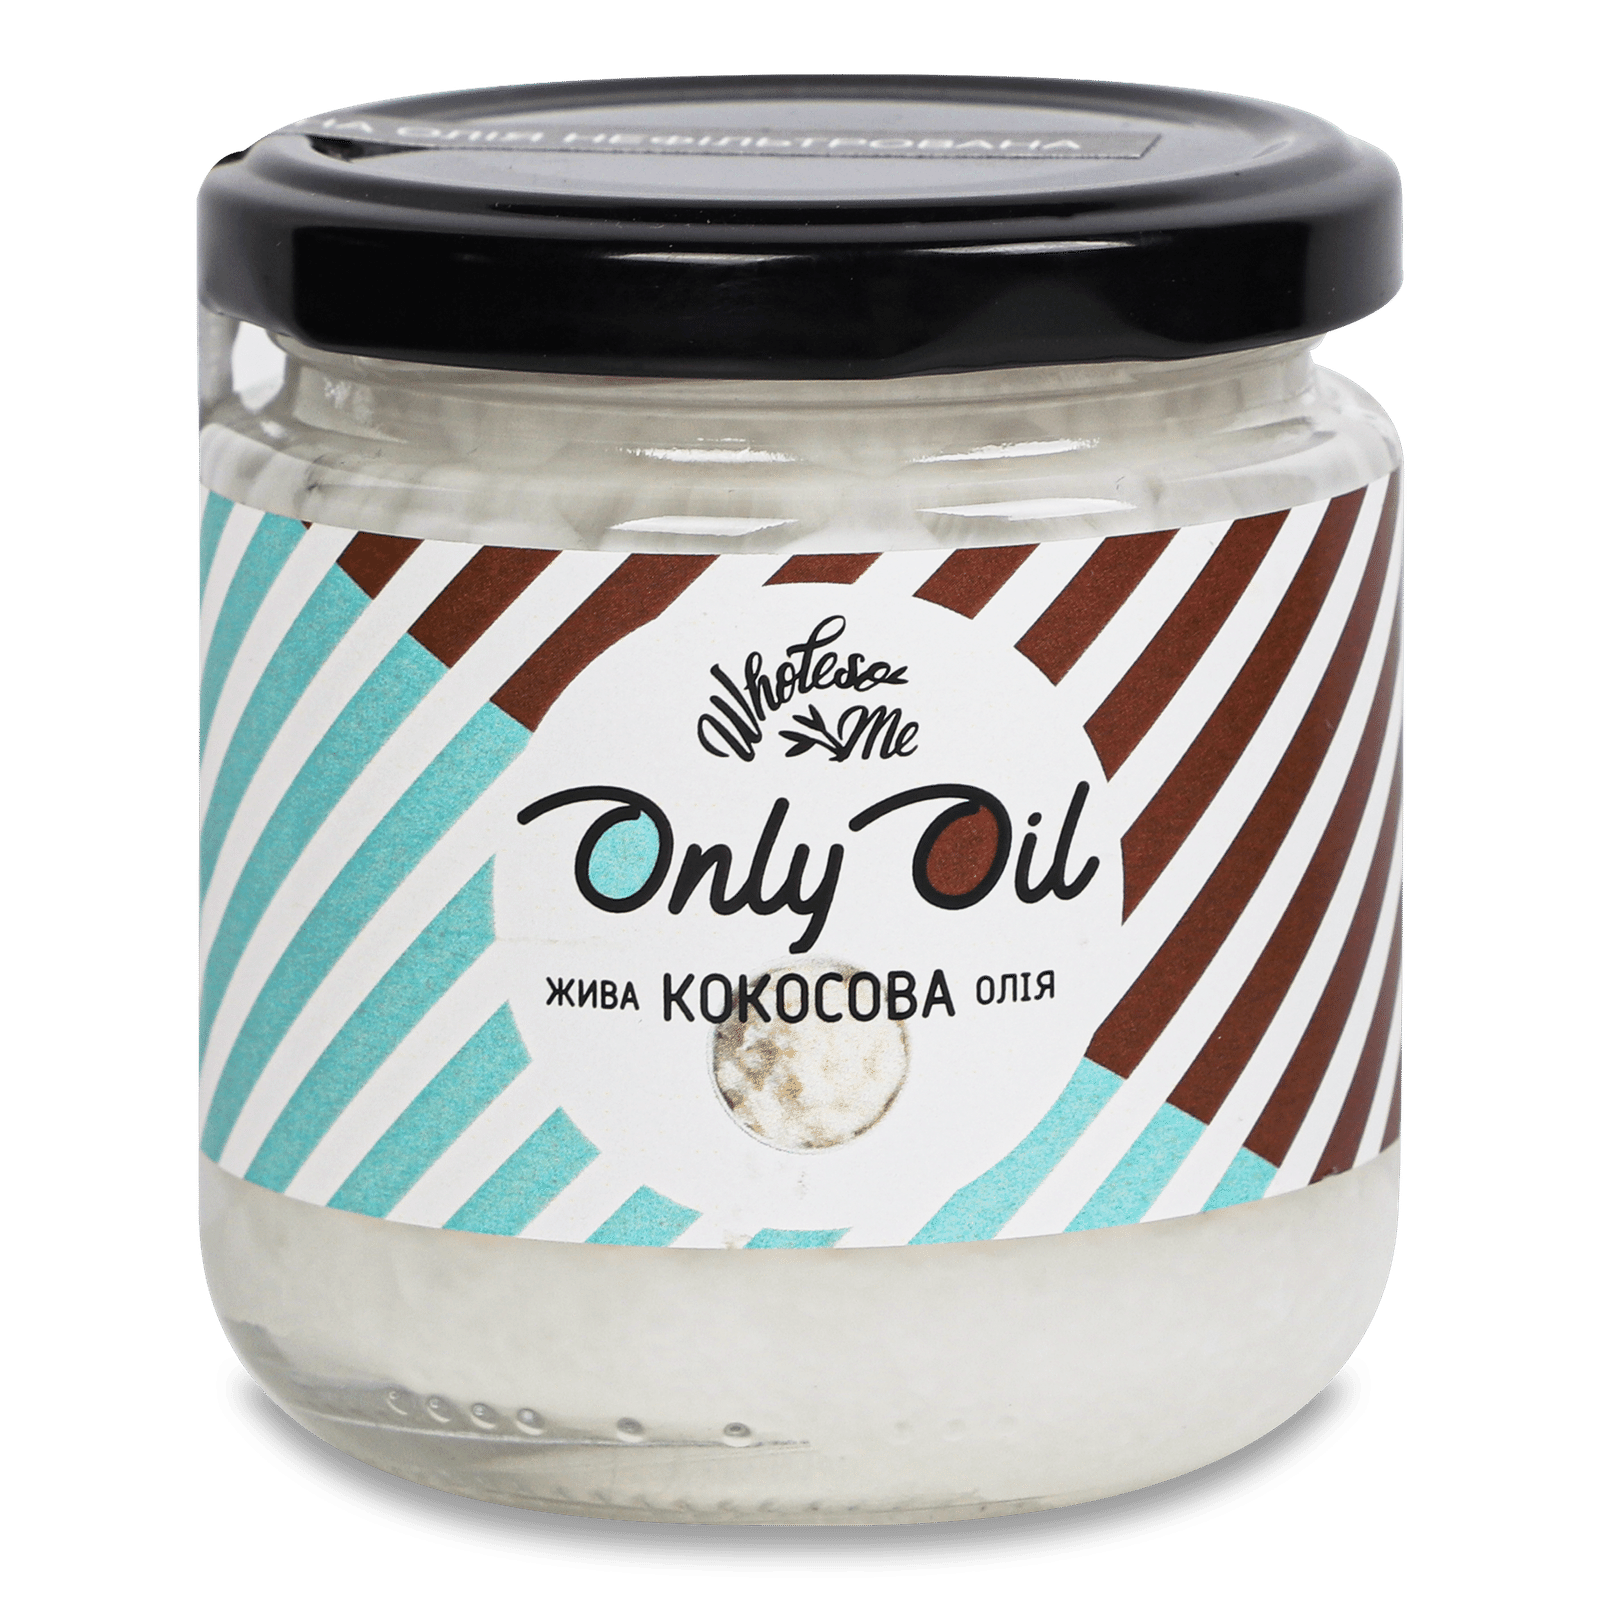 Олія кокосова «Лавка традицій» Wholesome Only Oil жива - 1